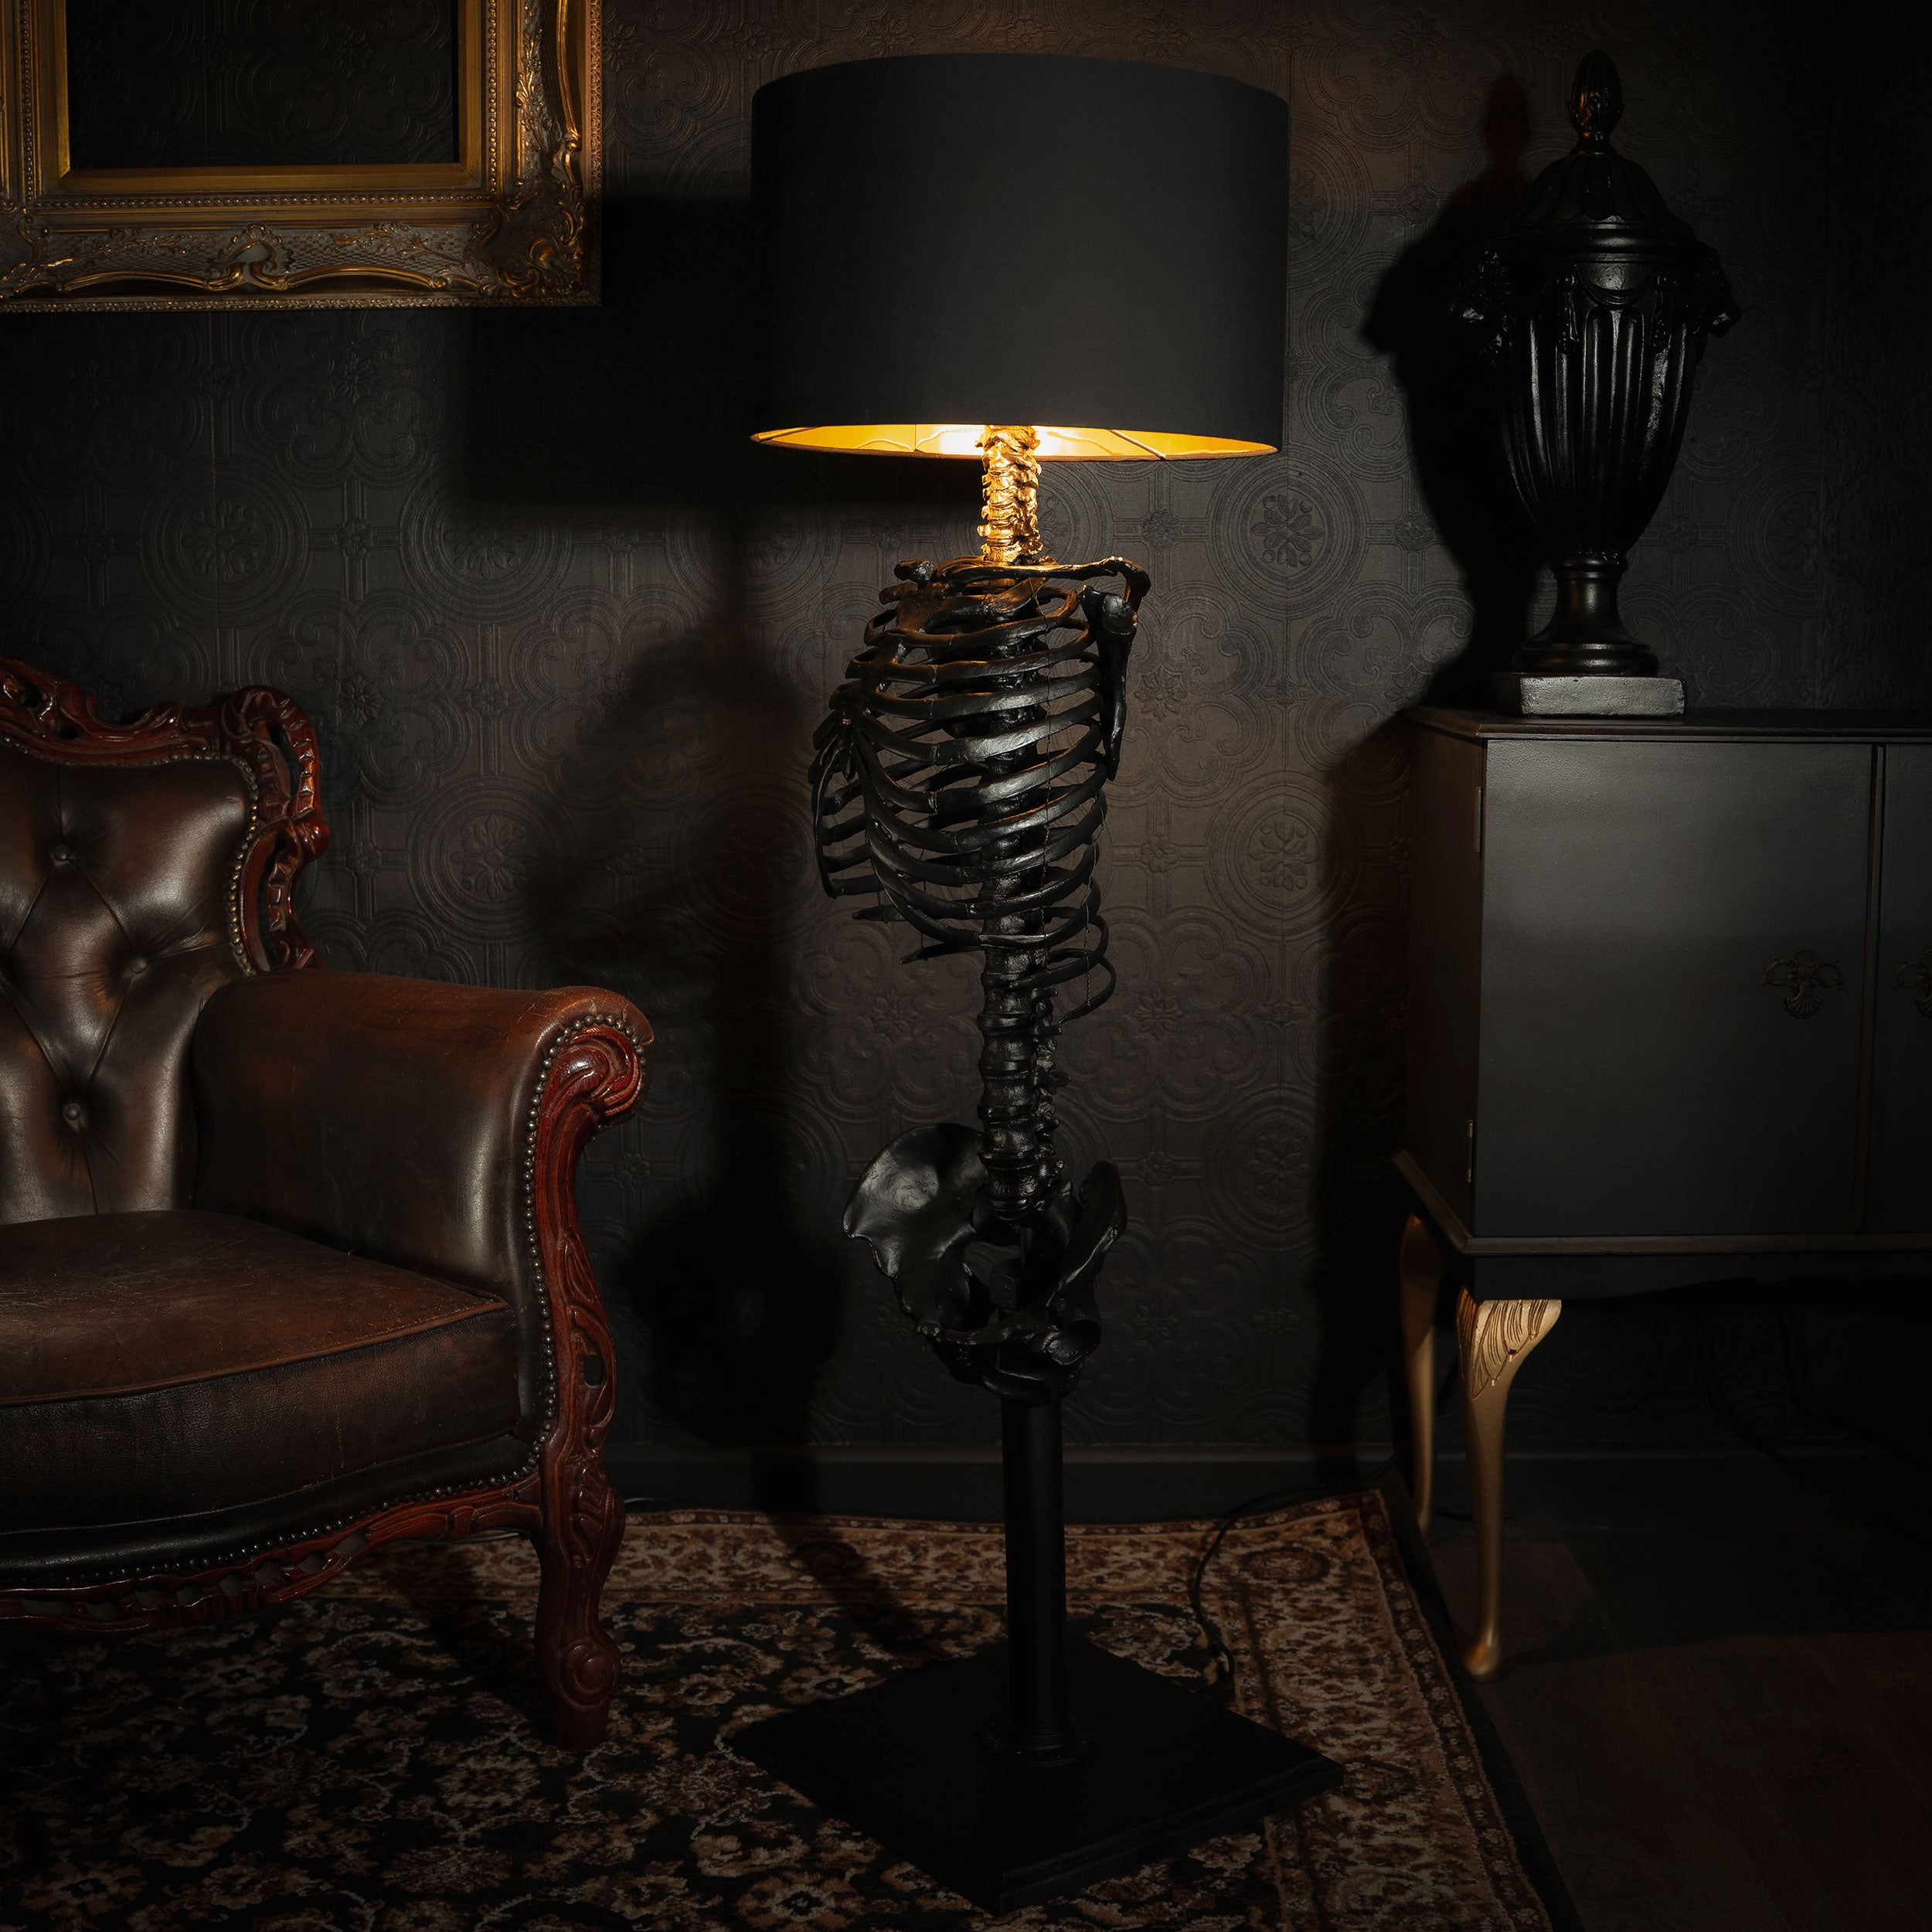 The Skeleton Lamp by The Blackened Teeth – The Blackened Teeth Ltd